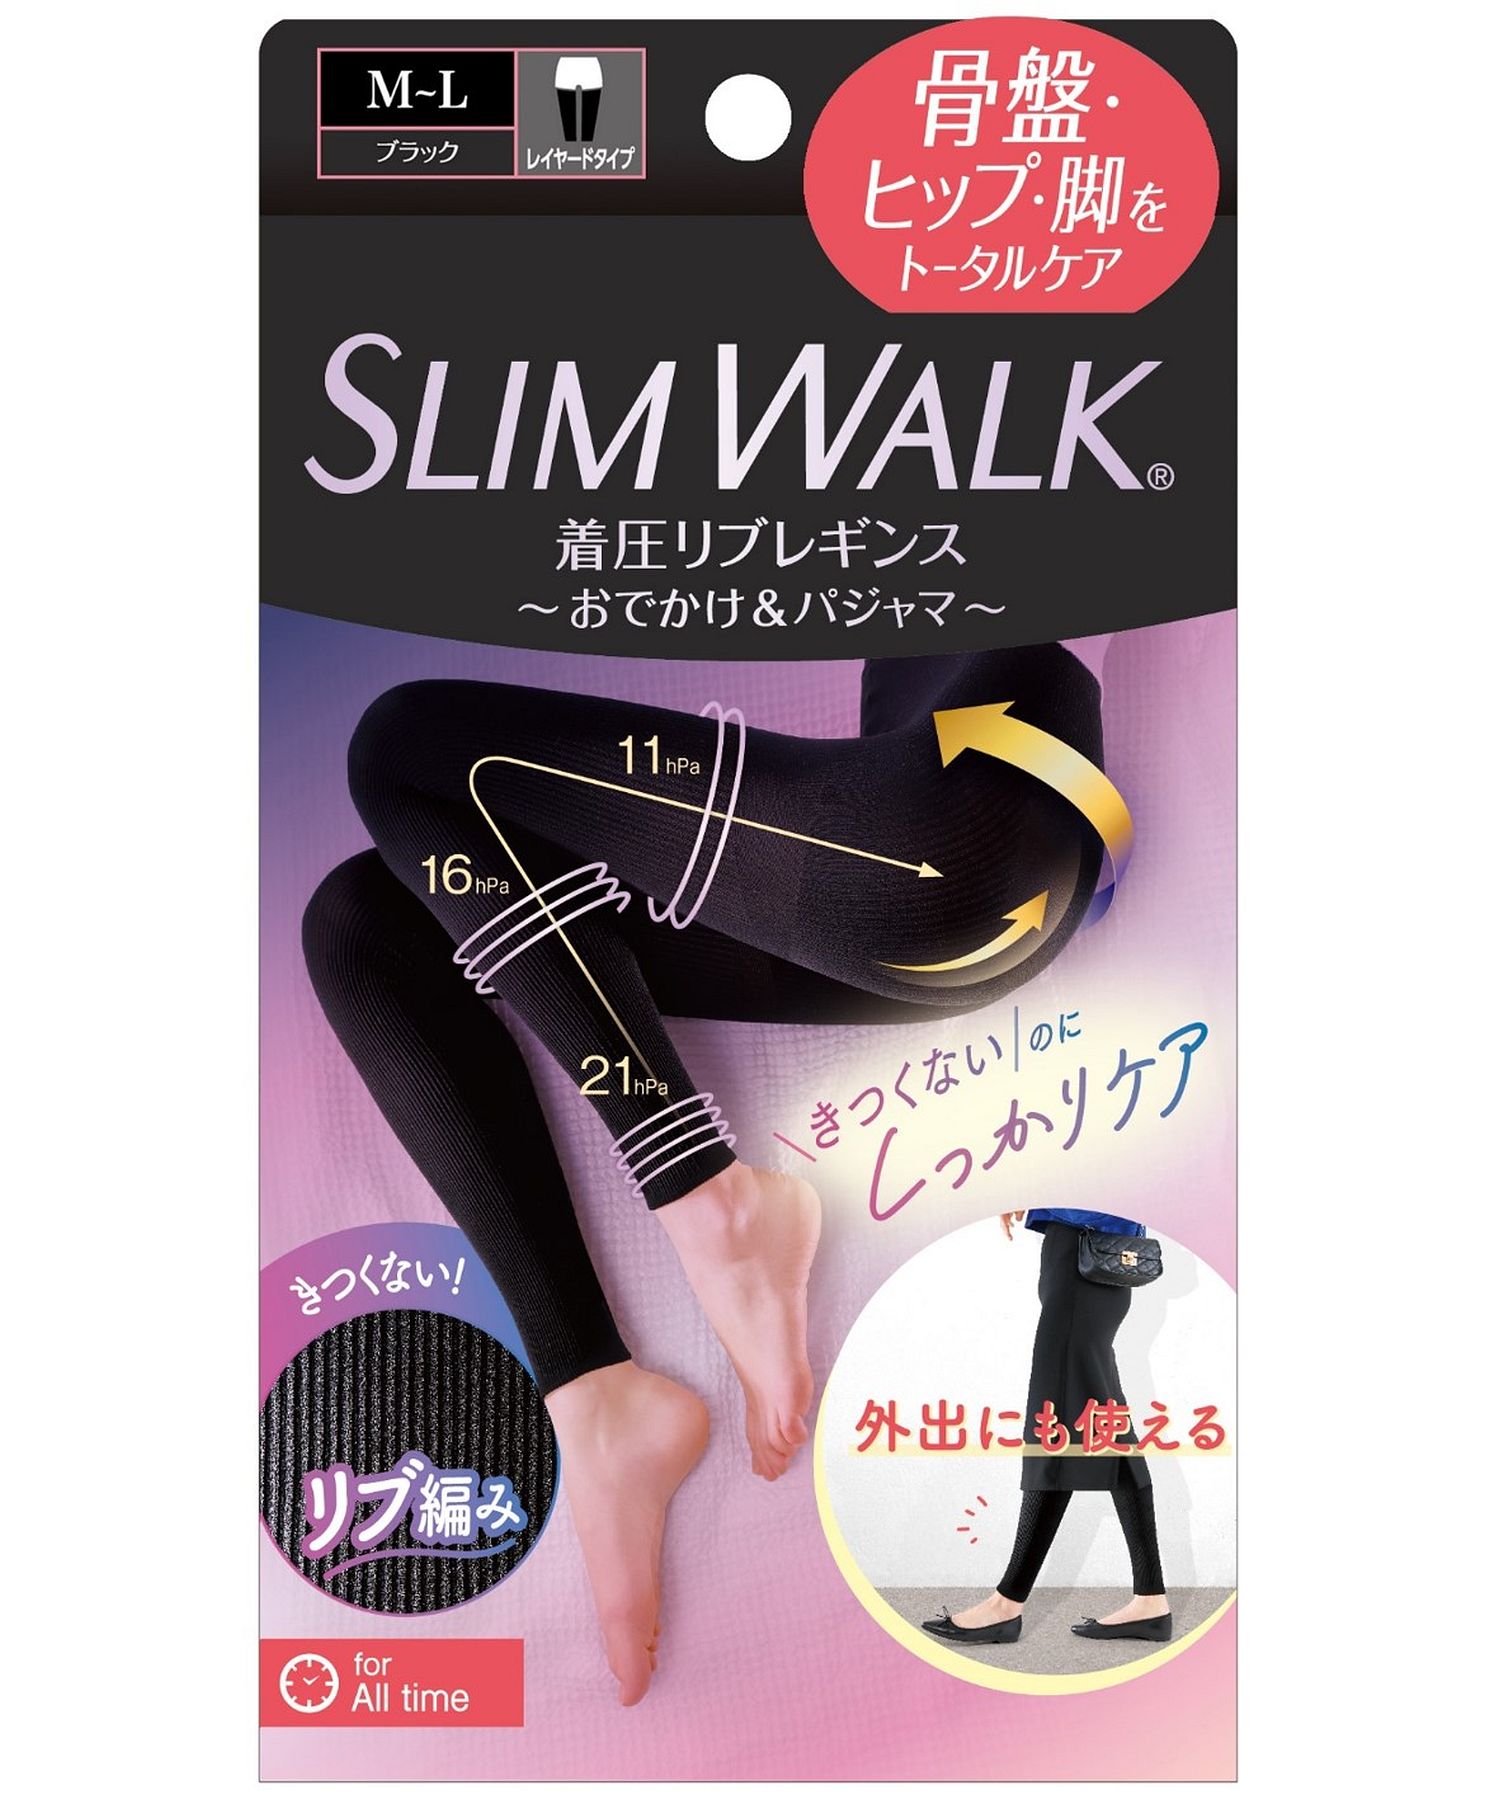 【新品未使用】SLIM WALK スリムウォーク 4点セット